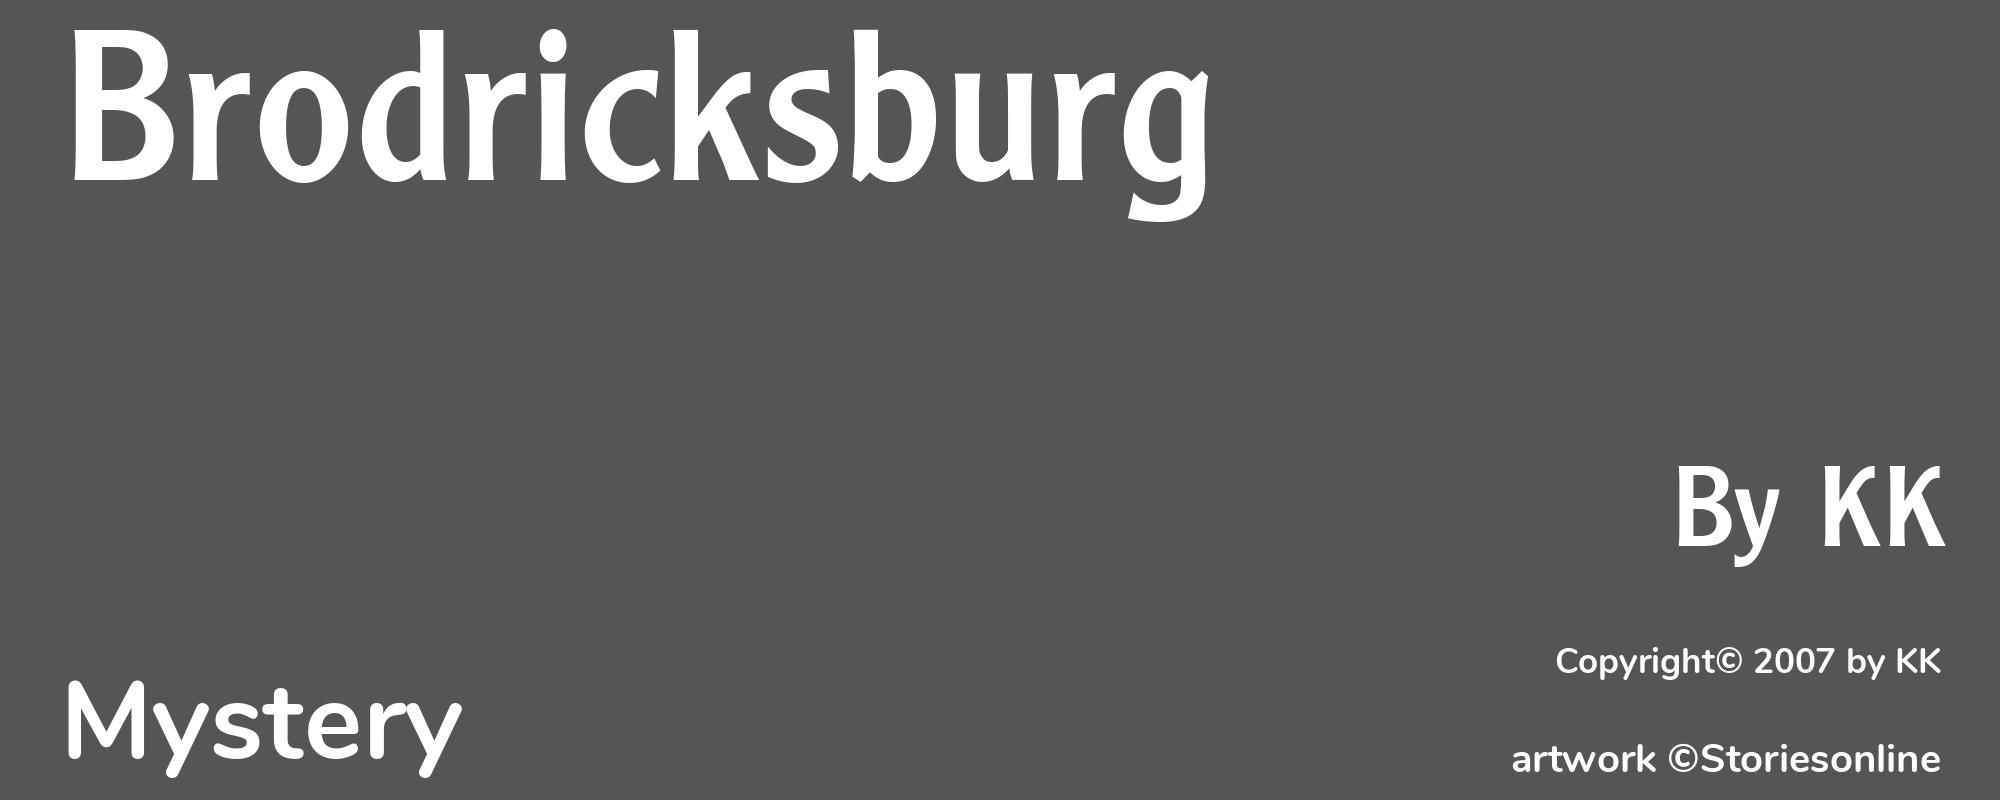 Brodricksburg - Cover